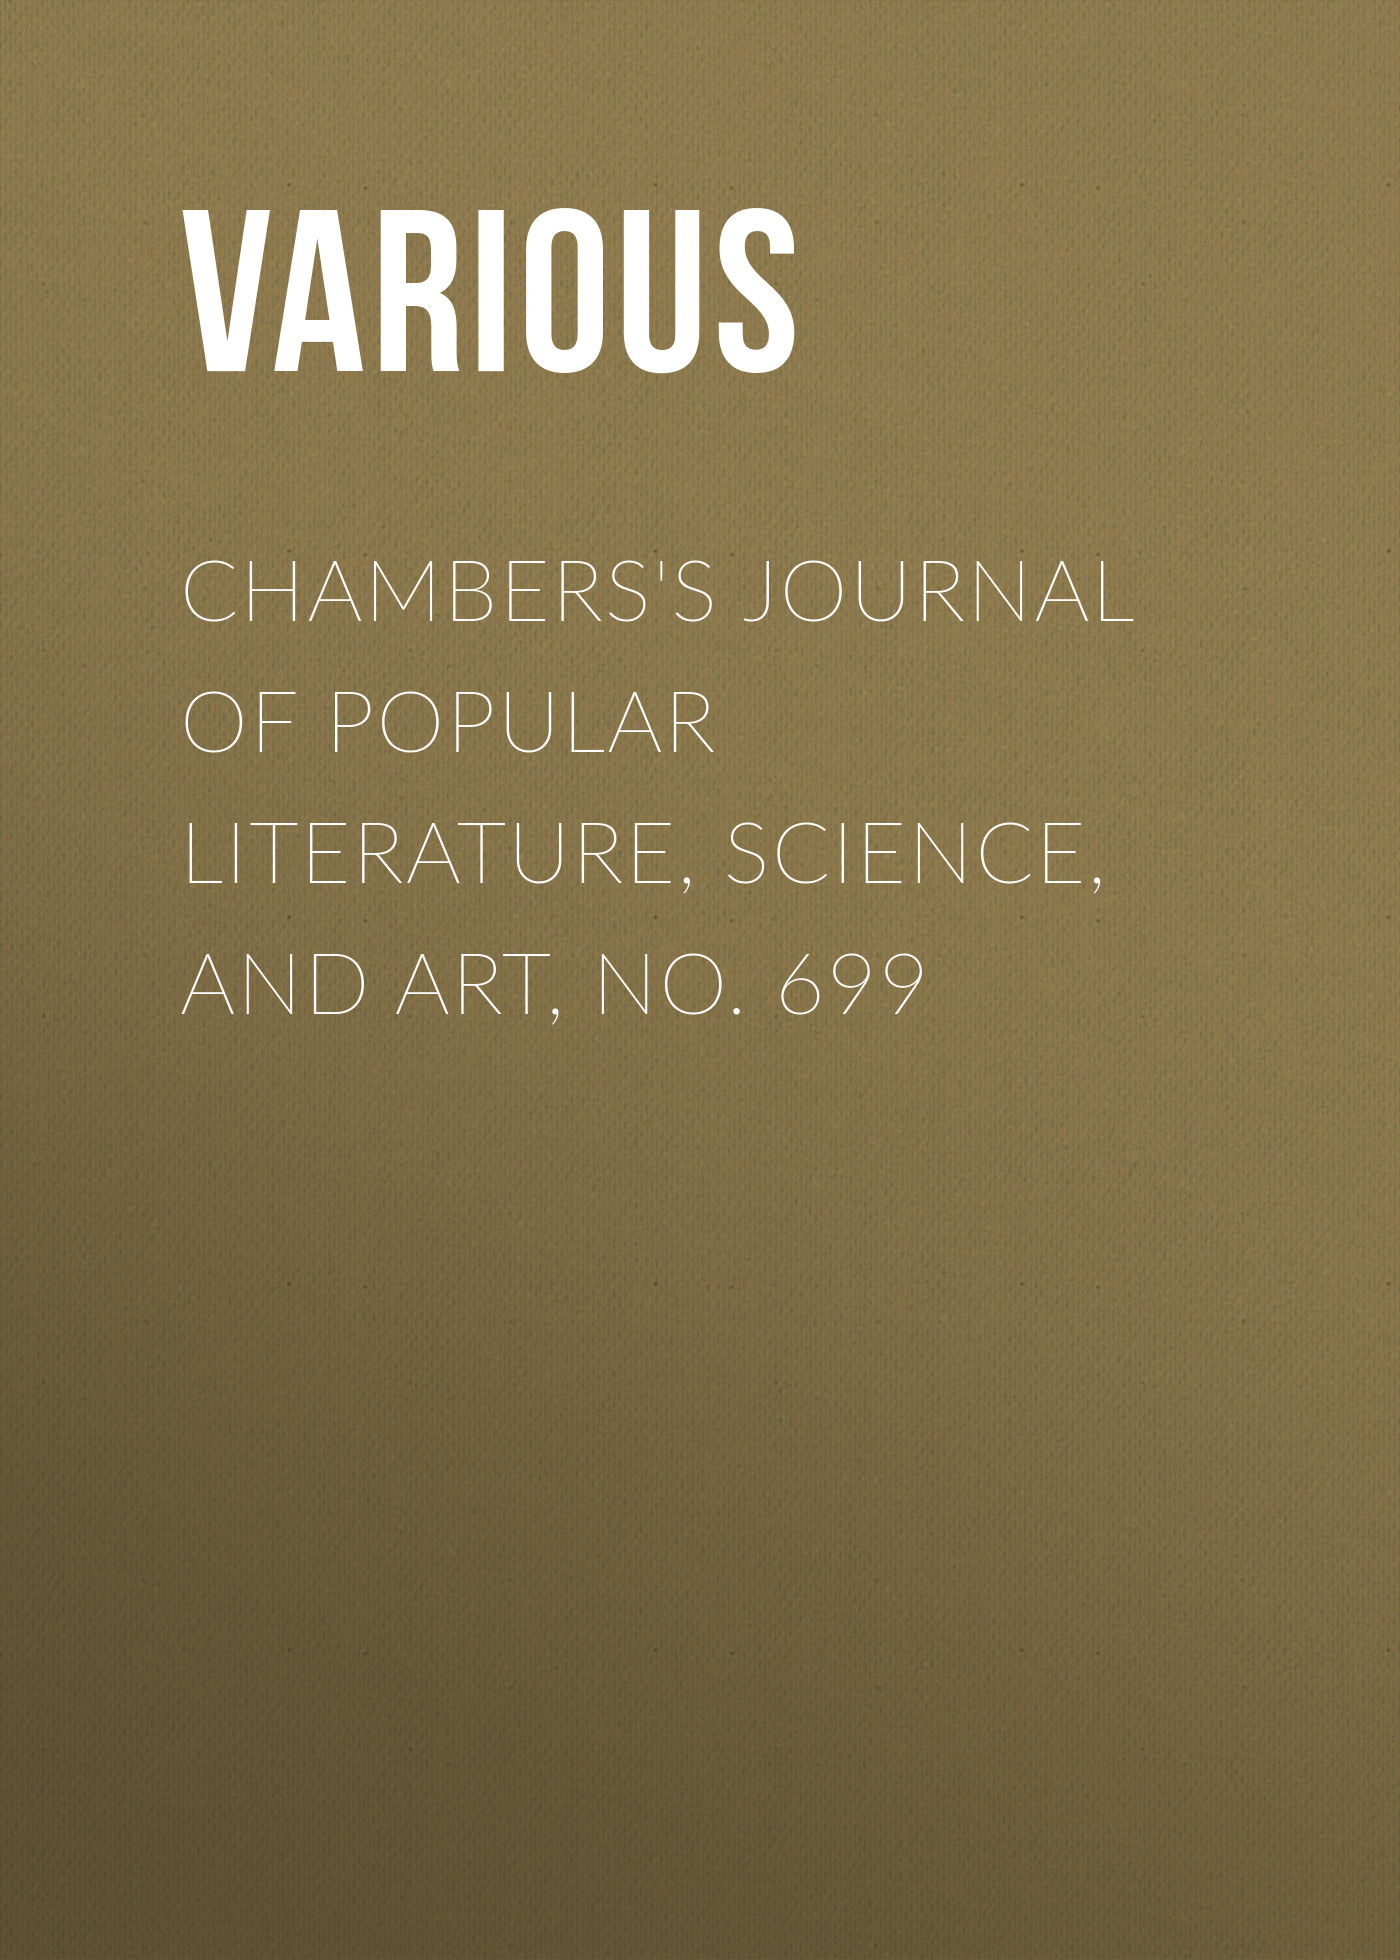 Книга Chambers's Journal of Popular Literature, Science, and Art, No. 699 из серии , созданная  Various, может относится к жанру Журналы, Зарубежная образовательная литература. Стоимость электронной книги Chambers's Journal of Popular Literature, Science, and Art, No. 699 с идентификатором 25569799 составляет 0 руб.